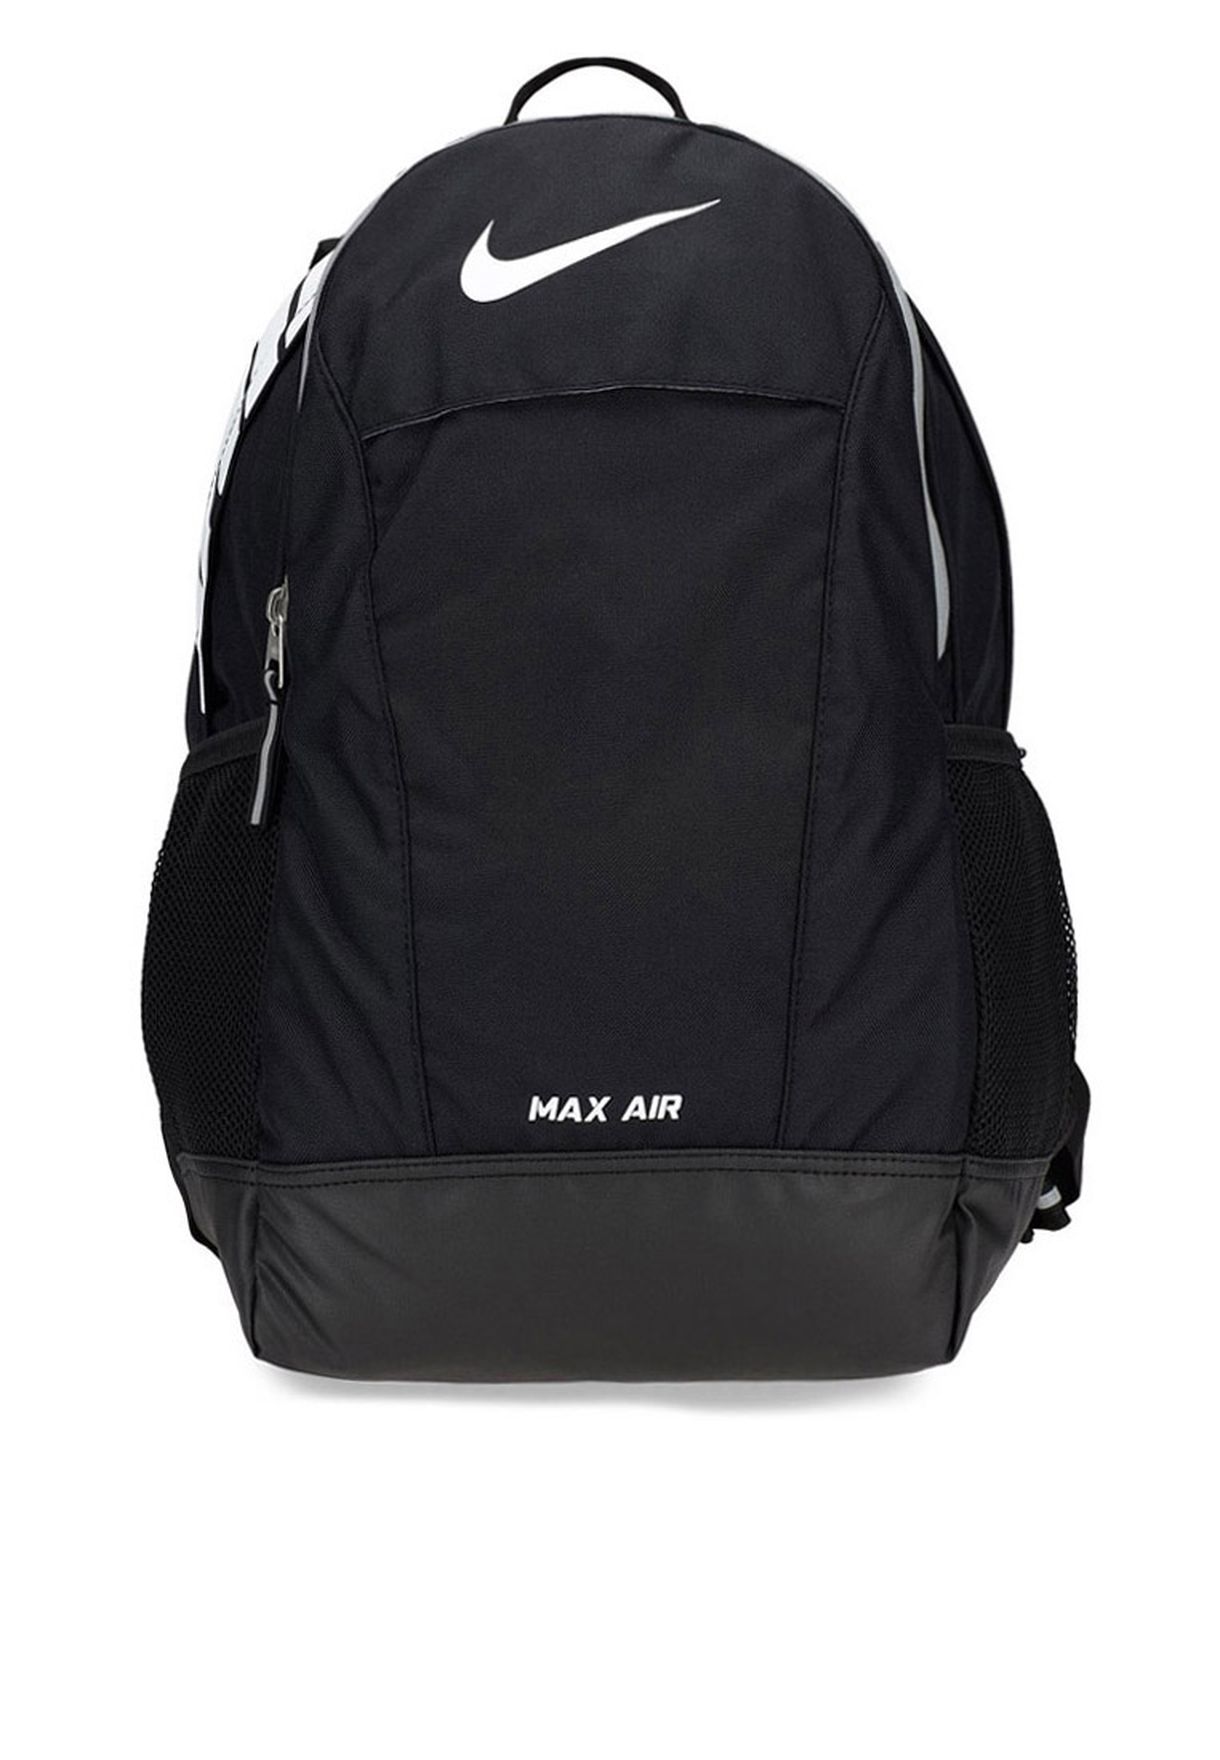 price of nike max air bag